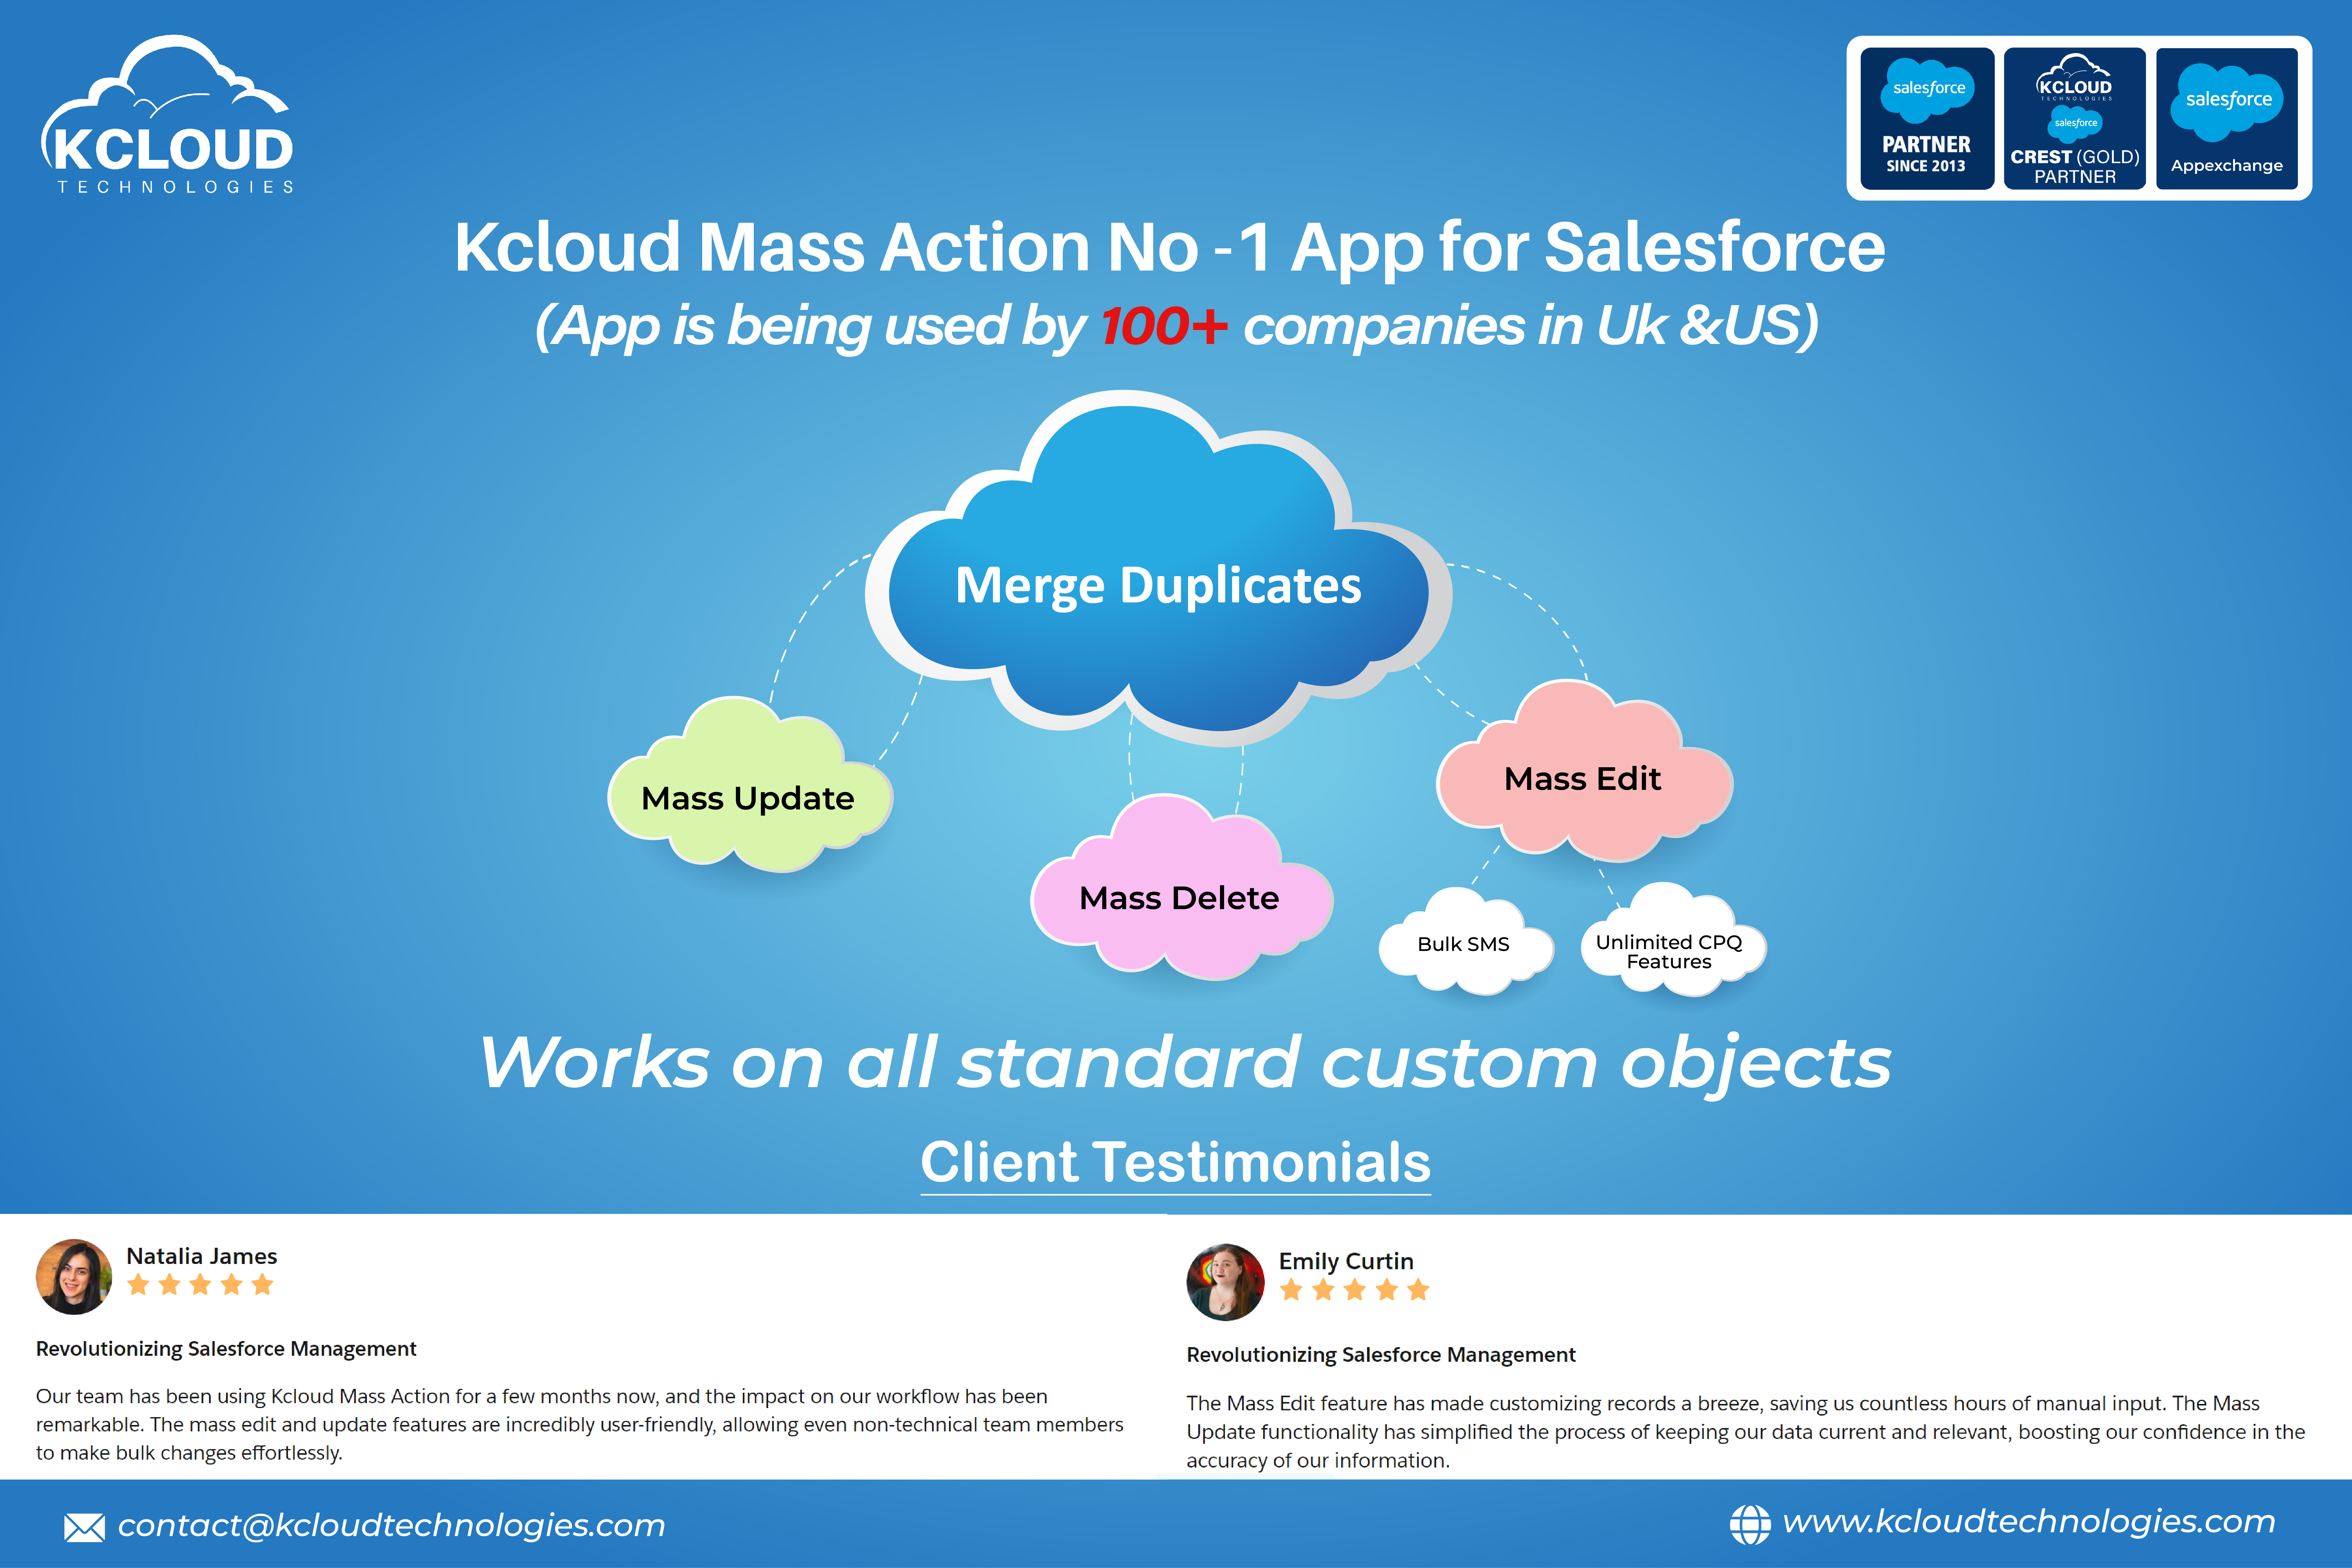 Kcloud Mass Actions - Mass Edit, Mass Delete, Mass Update